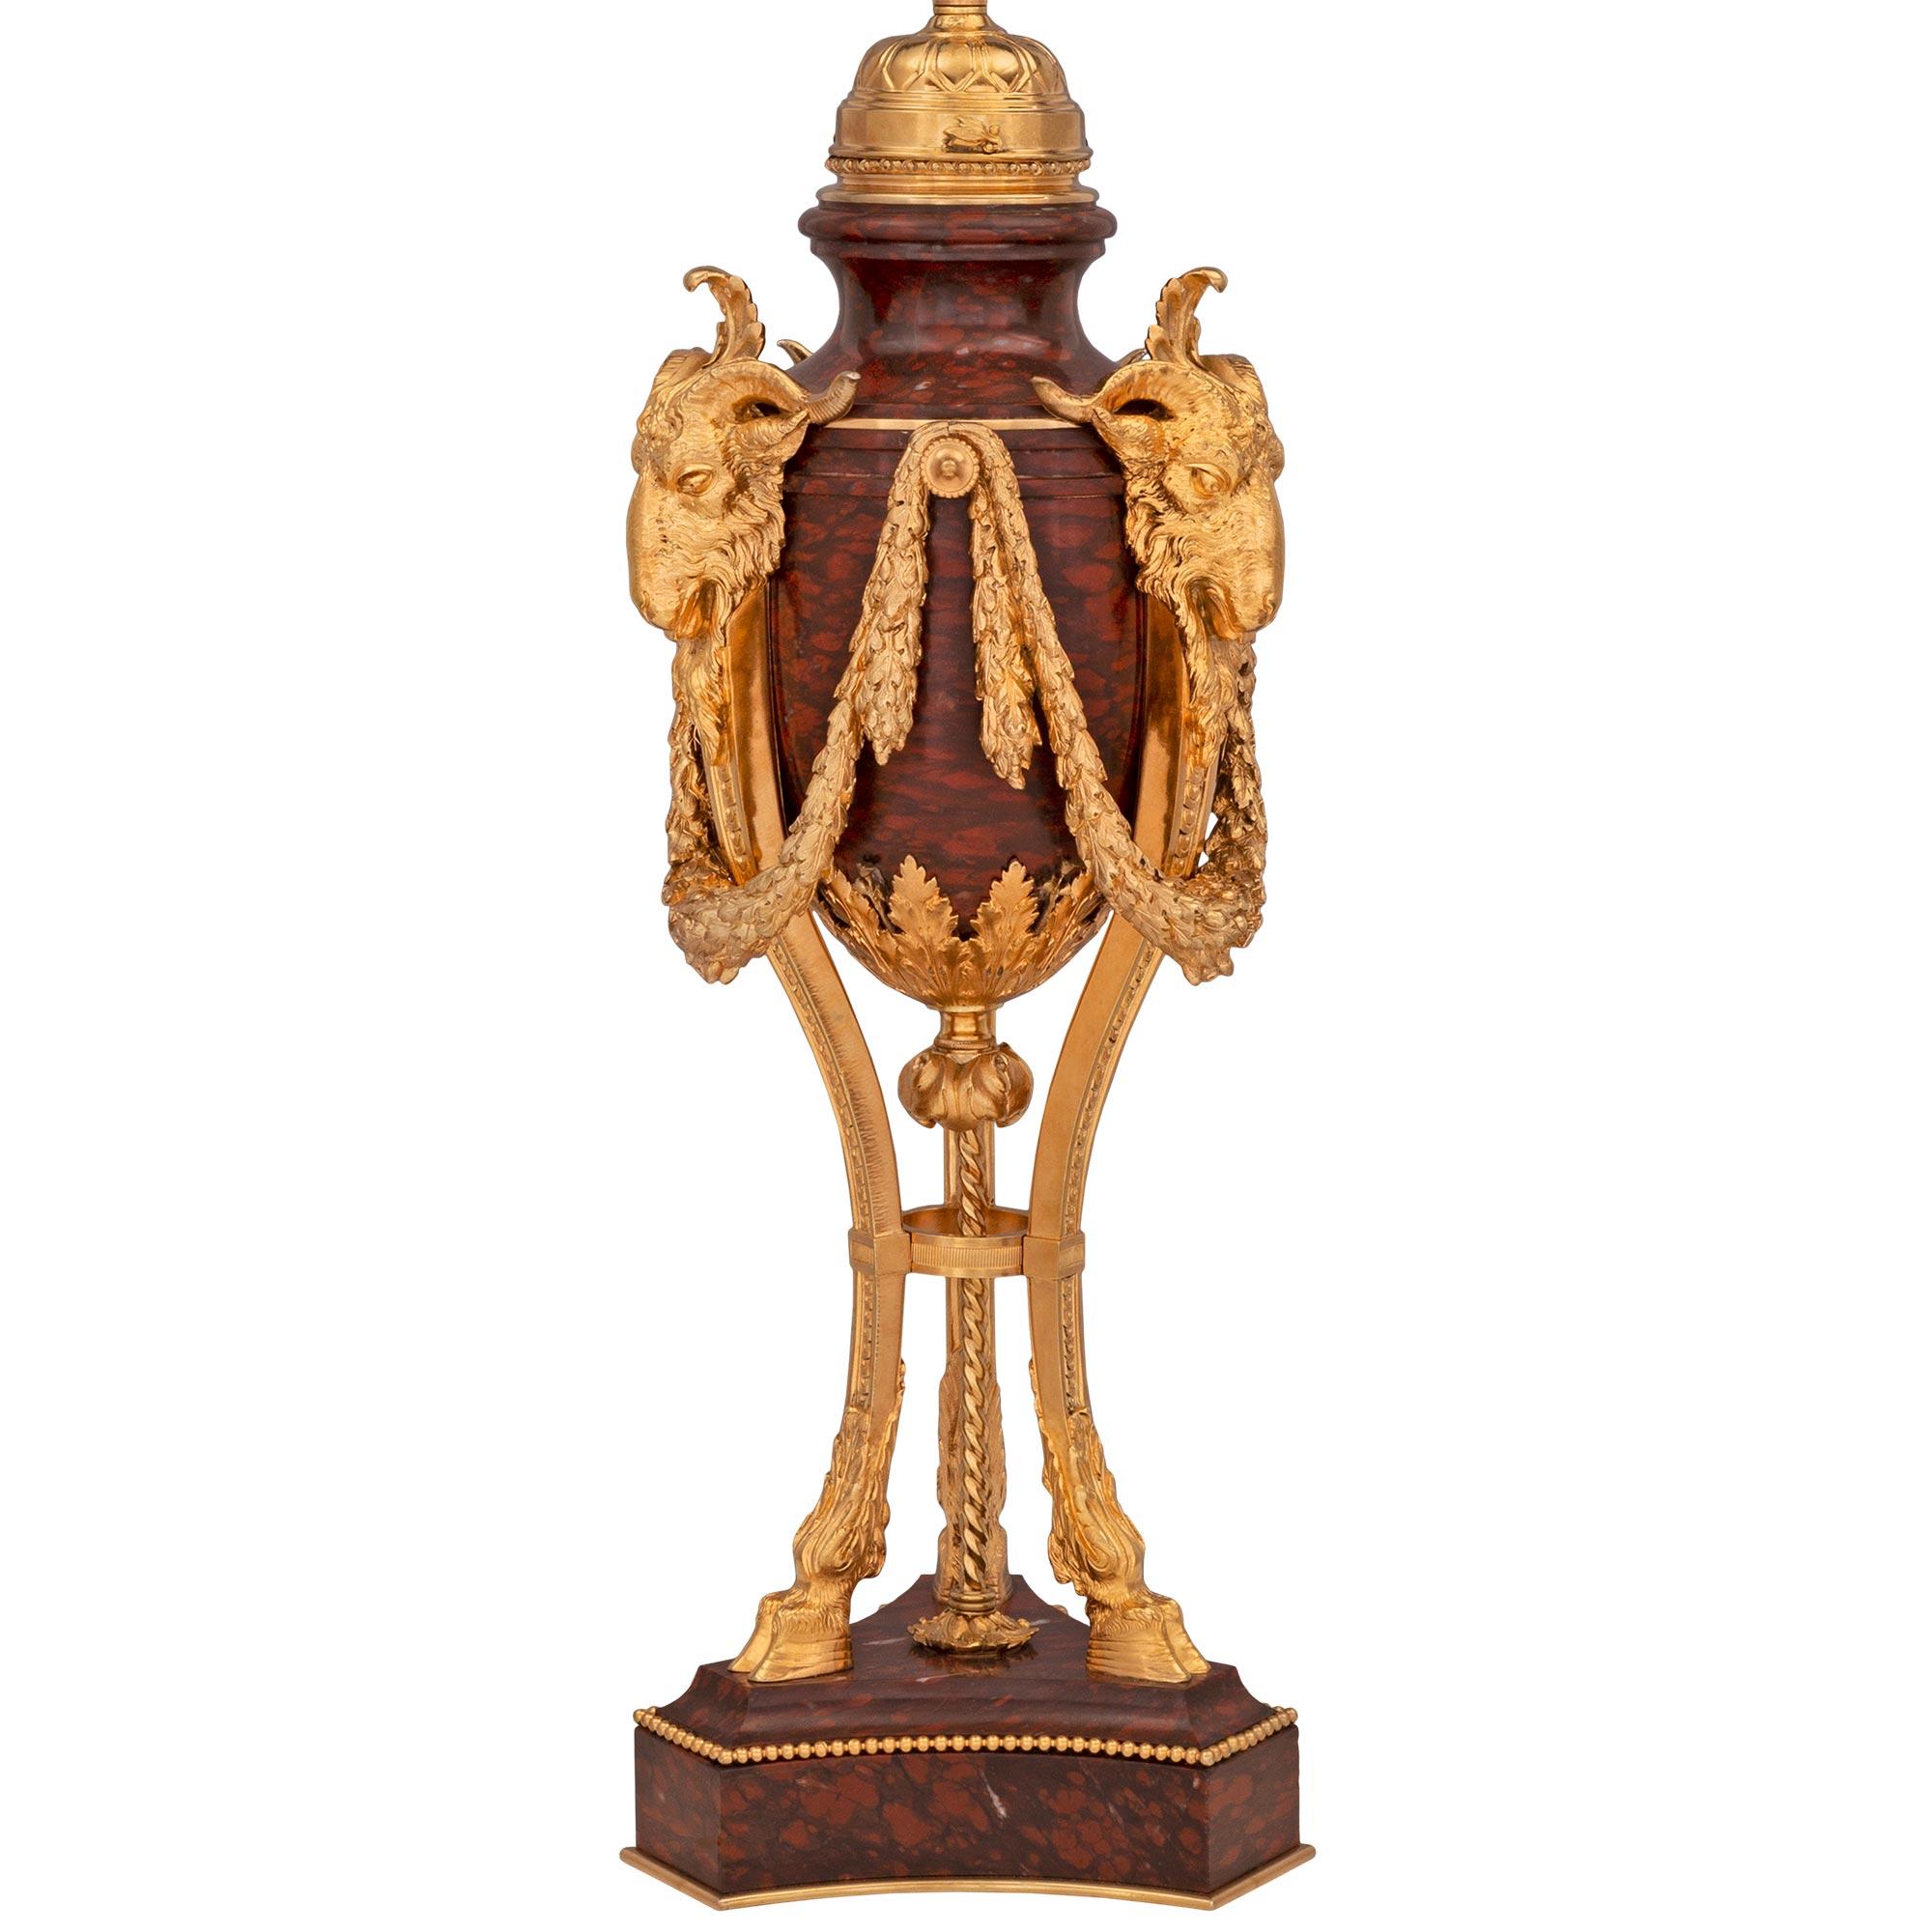 Une lampe en bronze doré et en marbre rouge griotte de très grande qualité, datant du 19e siècle, de style Louis XVI et de la Belle Époque. L'élégante lampe est surélevée par une base triangulaire en marbre Rouge Griotte aux fins côtés concaves et à